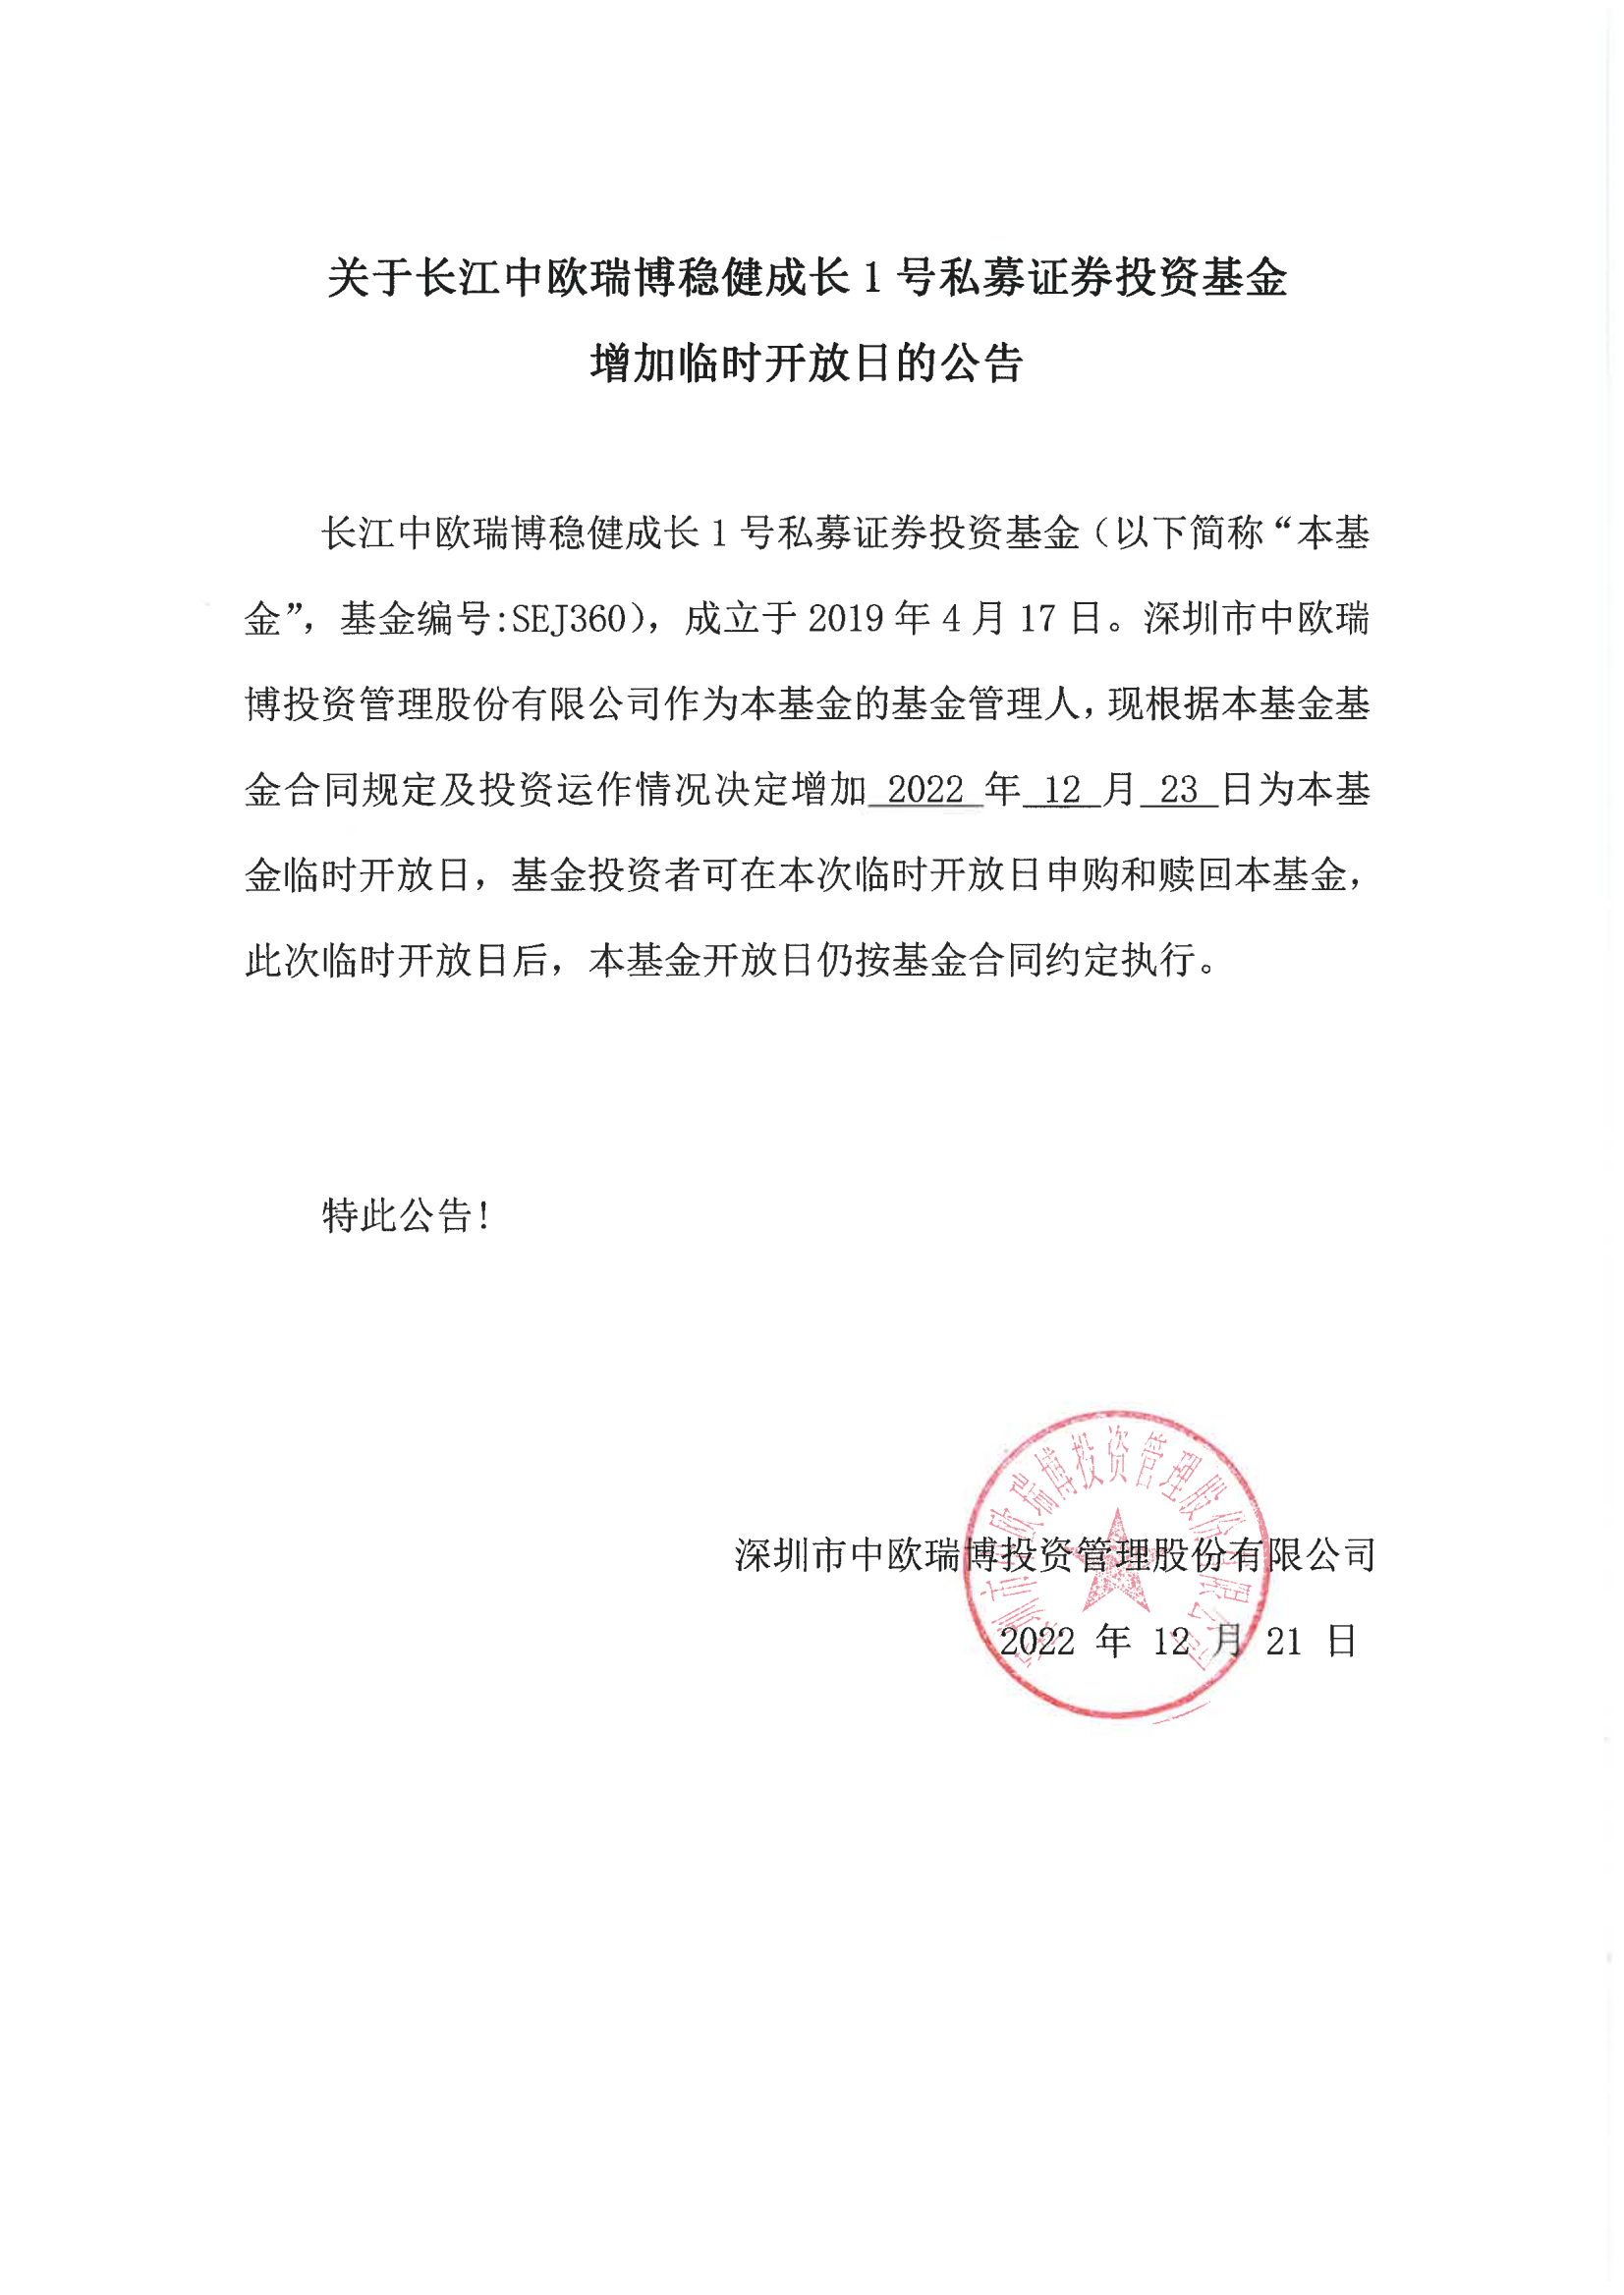 关于长江中欧瑞博稳健成长1号私募证券投资基金增加临时开放日的公告-20221223(1)_00.png